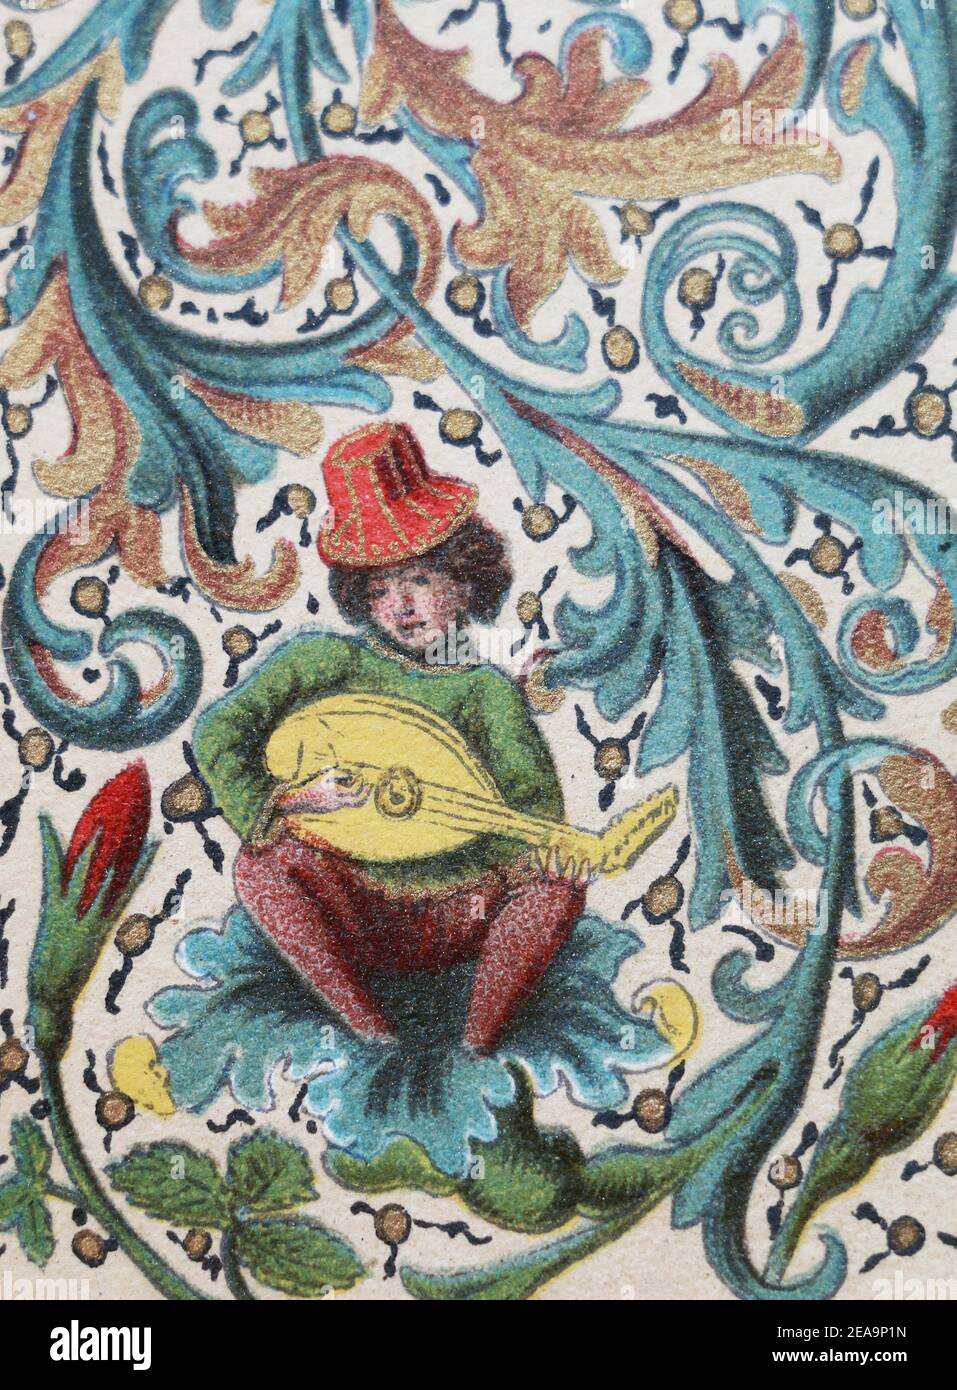 Immagine di un musicista francese medievale. Immagine dal manoscritto del 15 ° secolo. Foto Stock